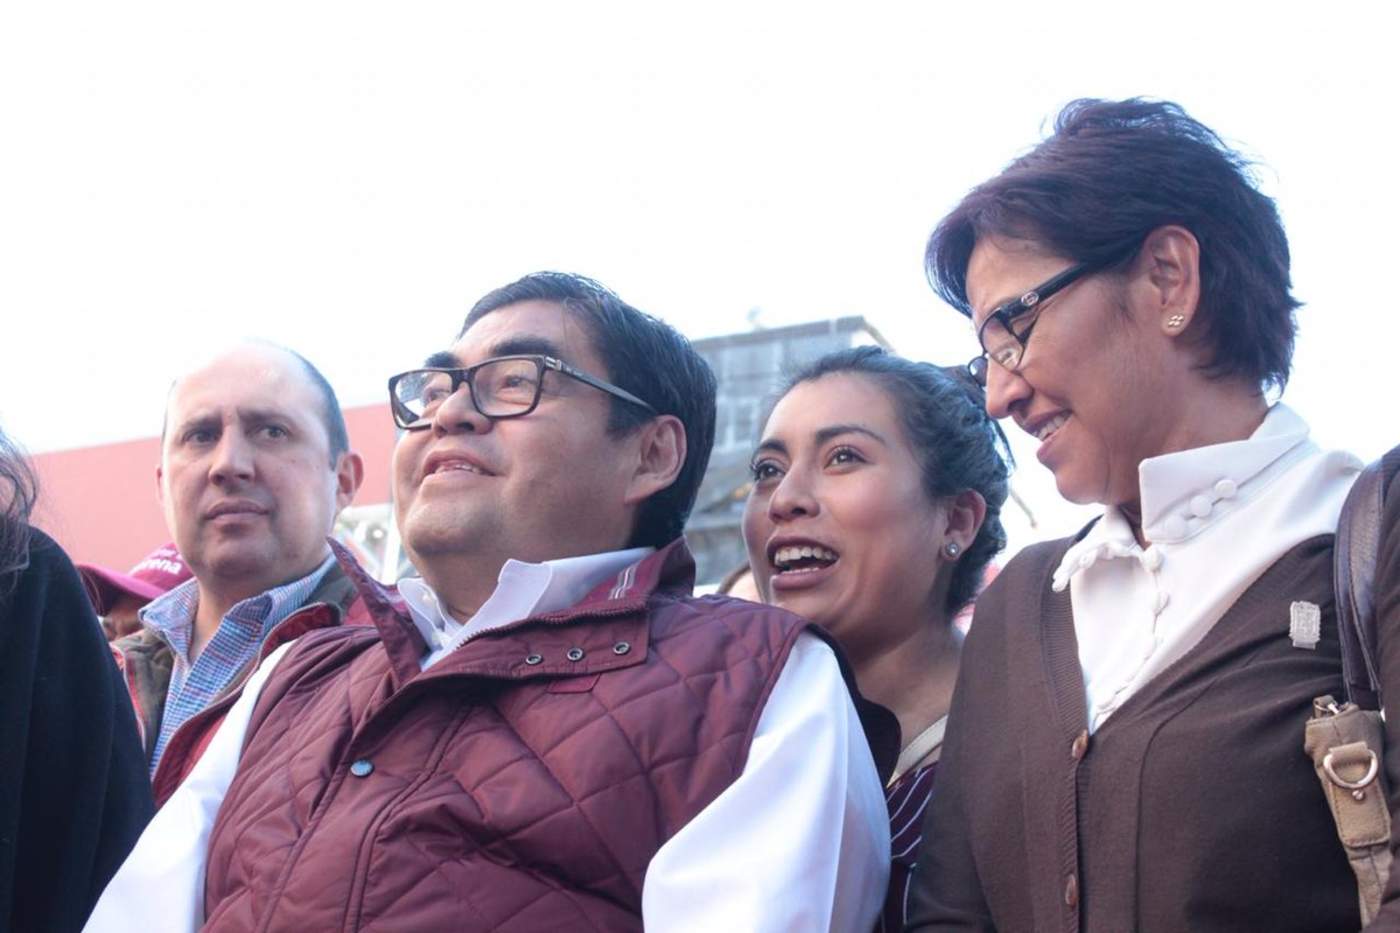 Encuesta elaborada por El Universal para conocer la intención de voto de los habitantes de Puebla, de cara a las elecciones extraordinarias para gobernador del estado. (TWITTER)